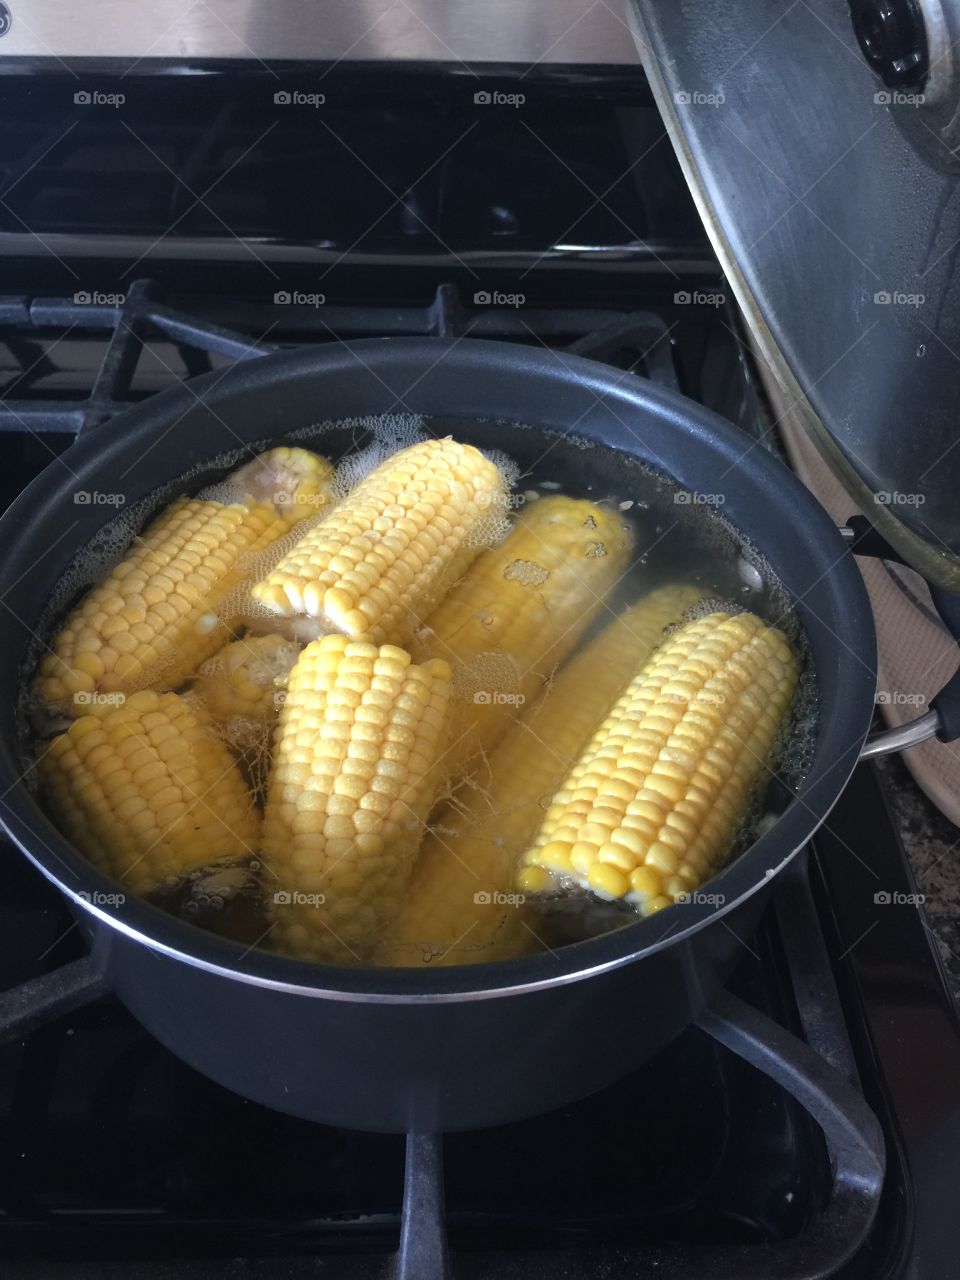 Boiling corns